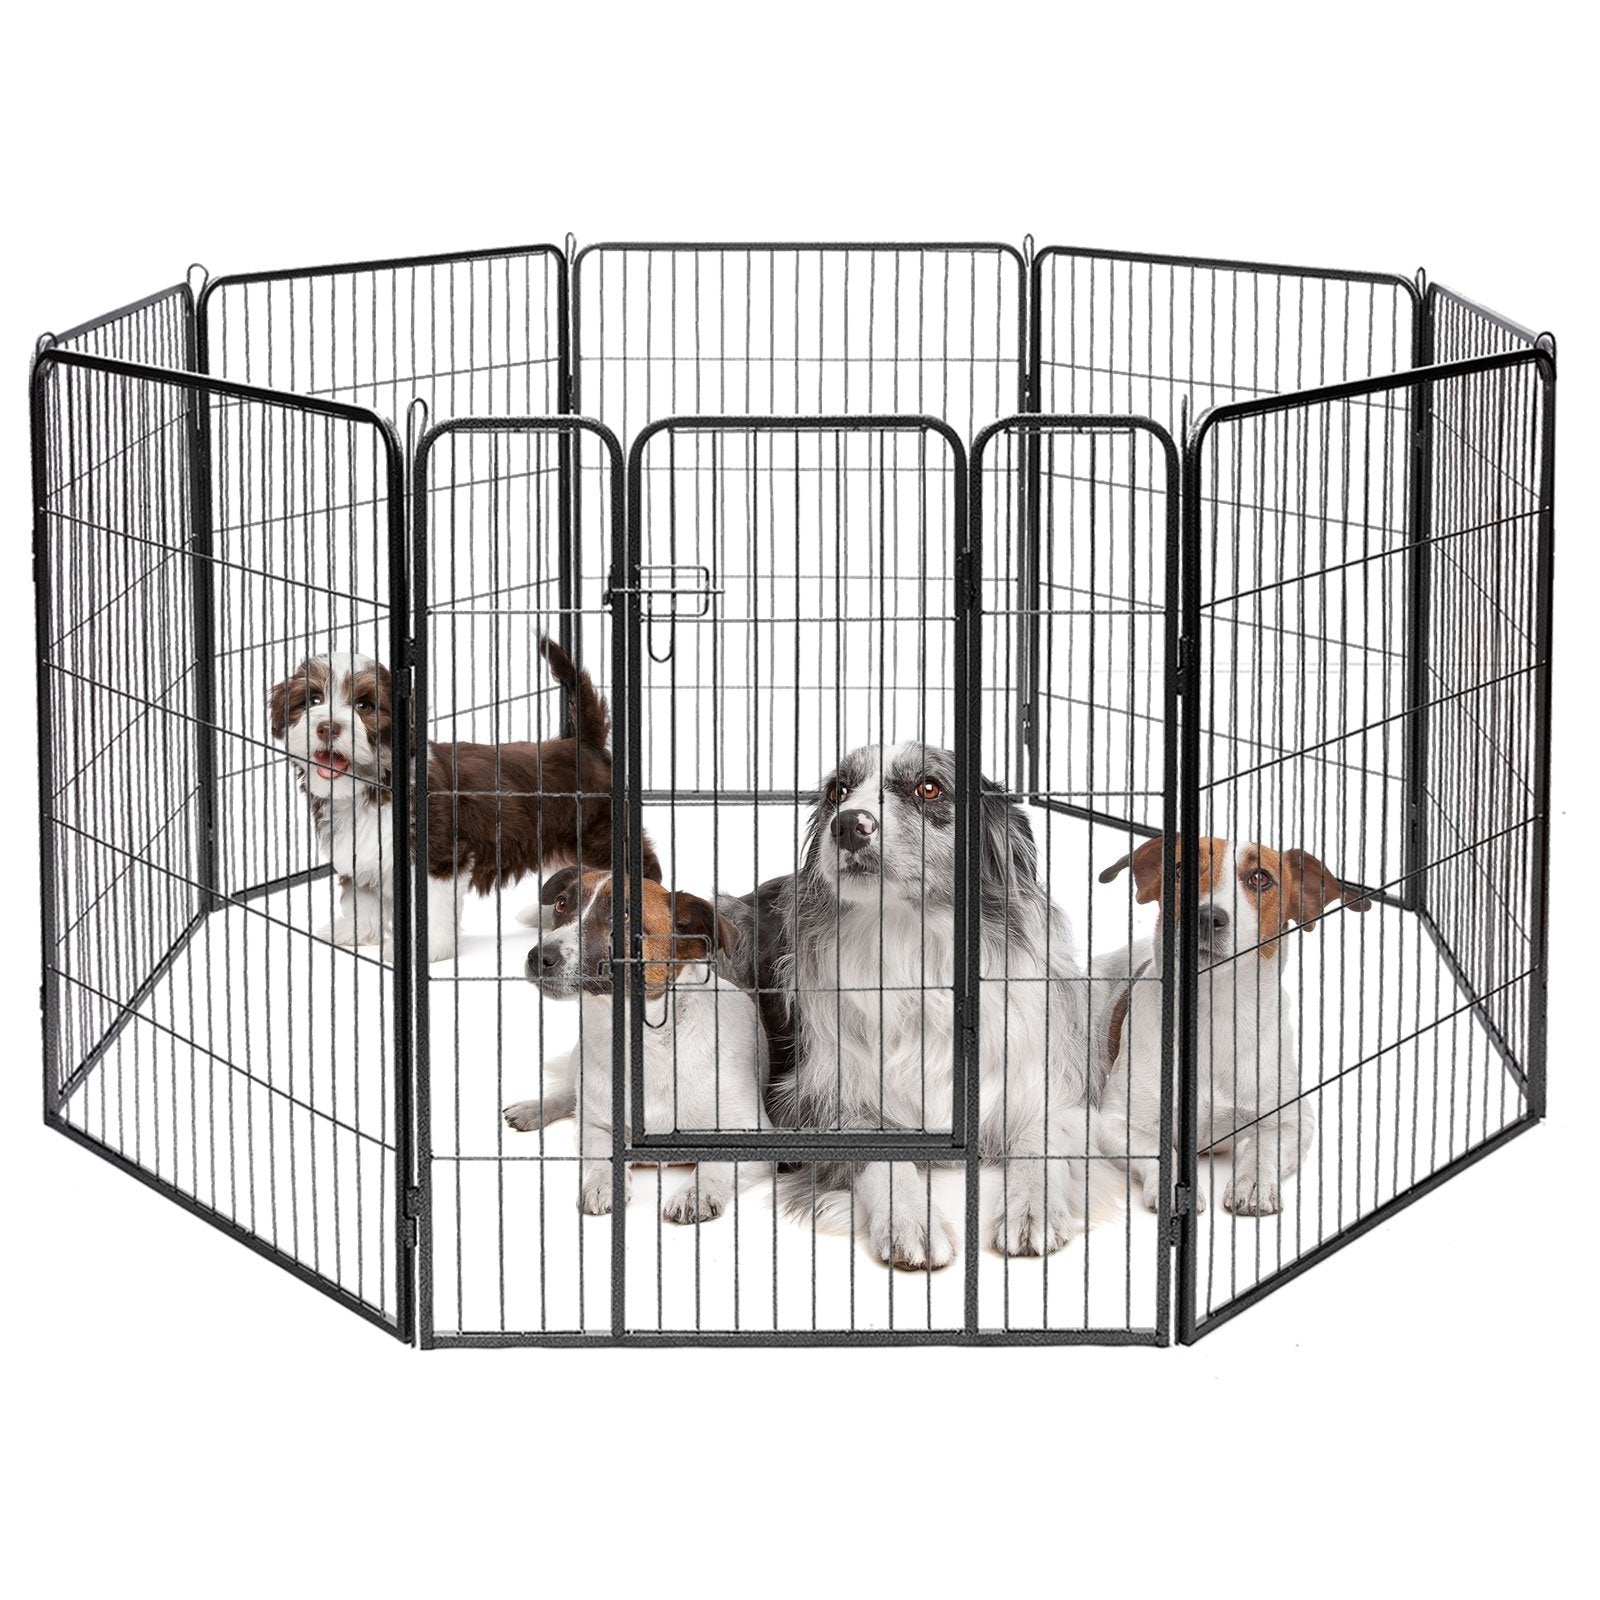 8 Metal Panel Heavy Duty Pet Playpen Dog Fence with Door-40 Inch, Black - Gallery Canada